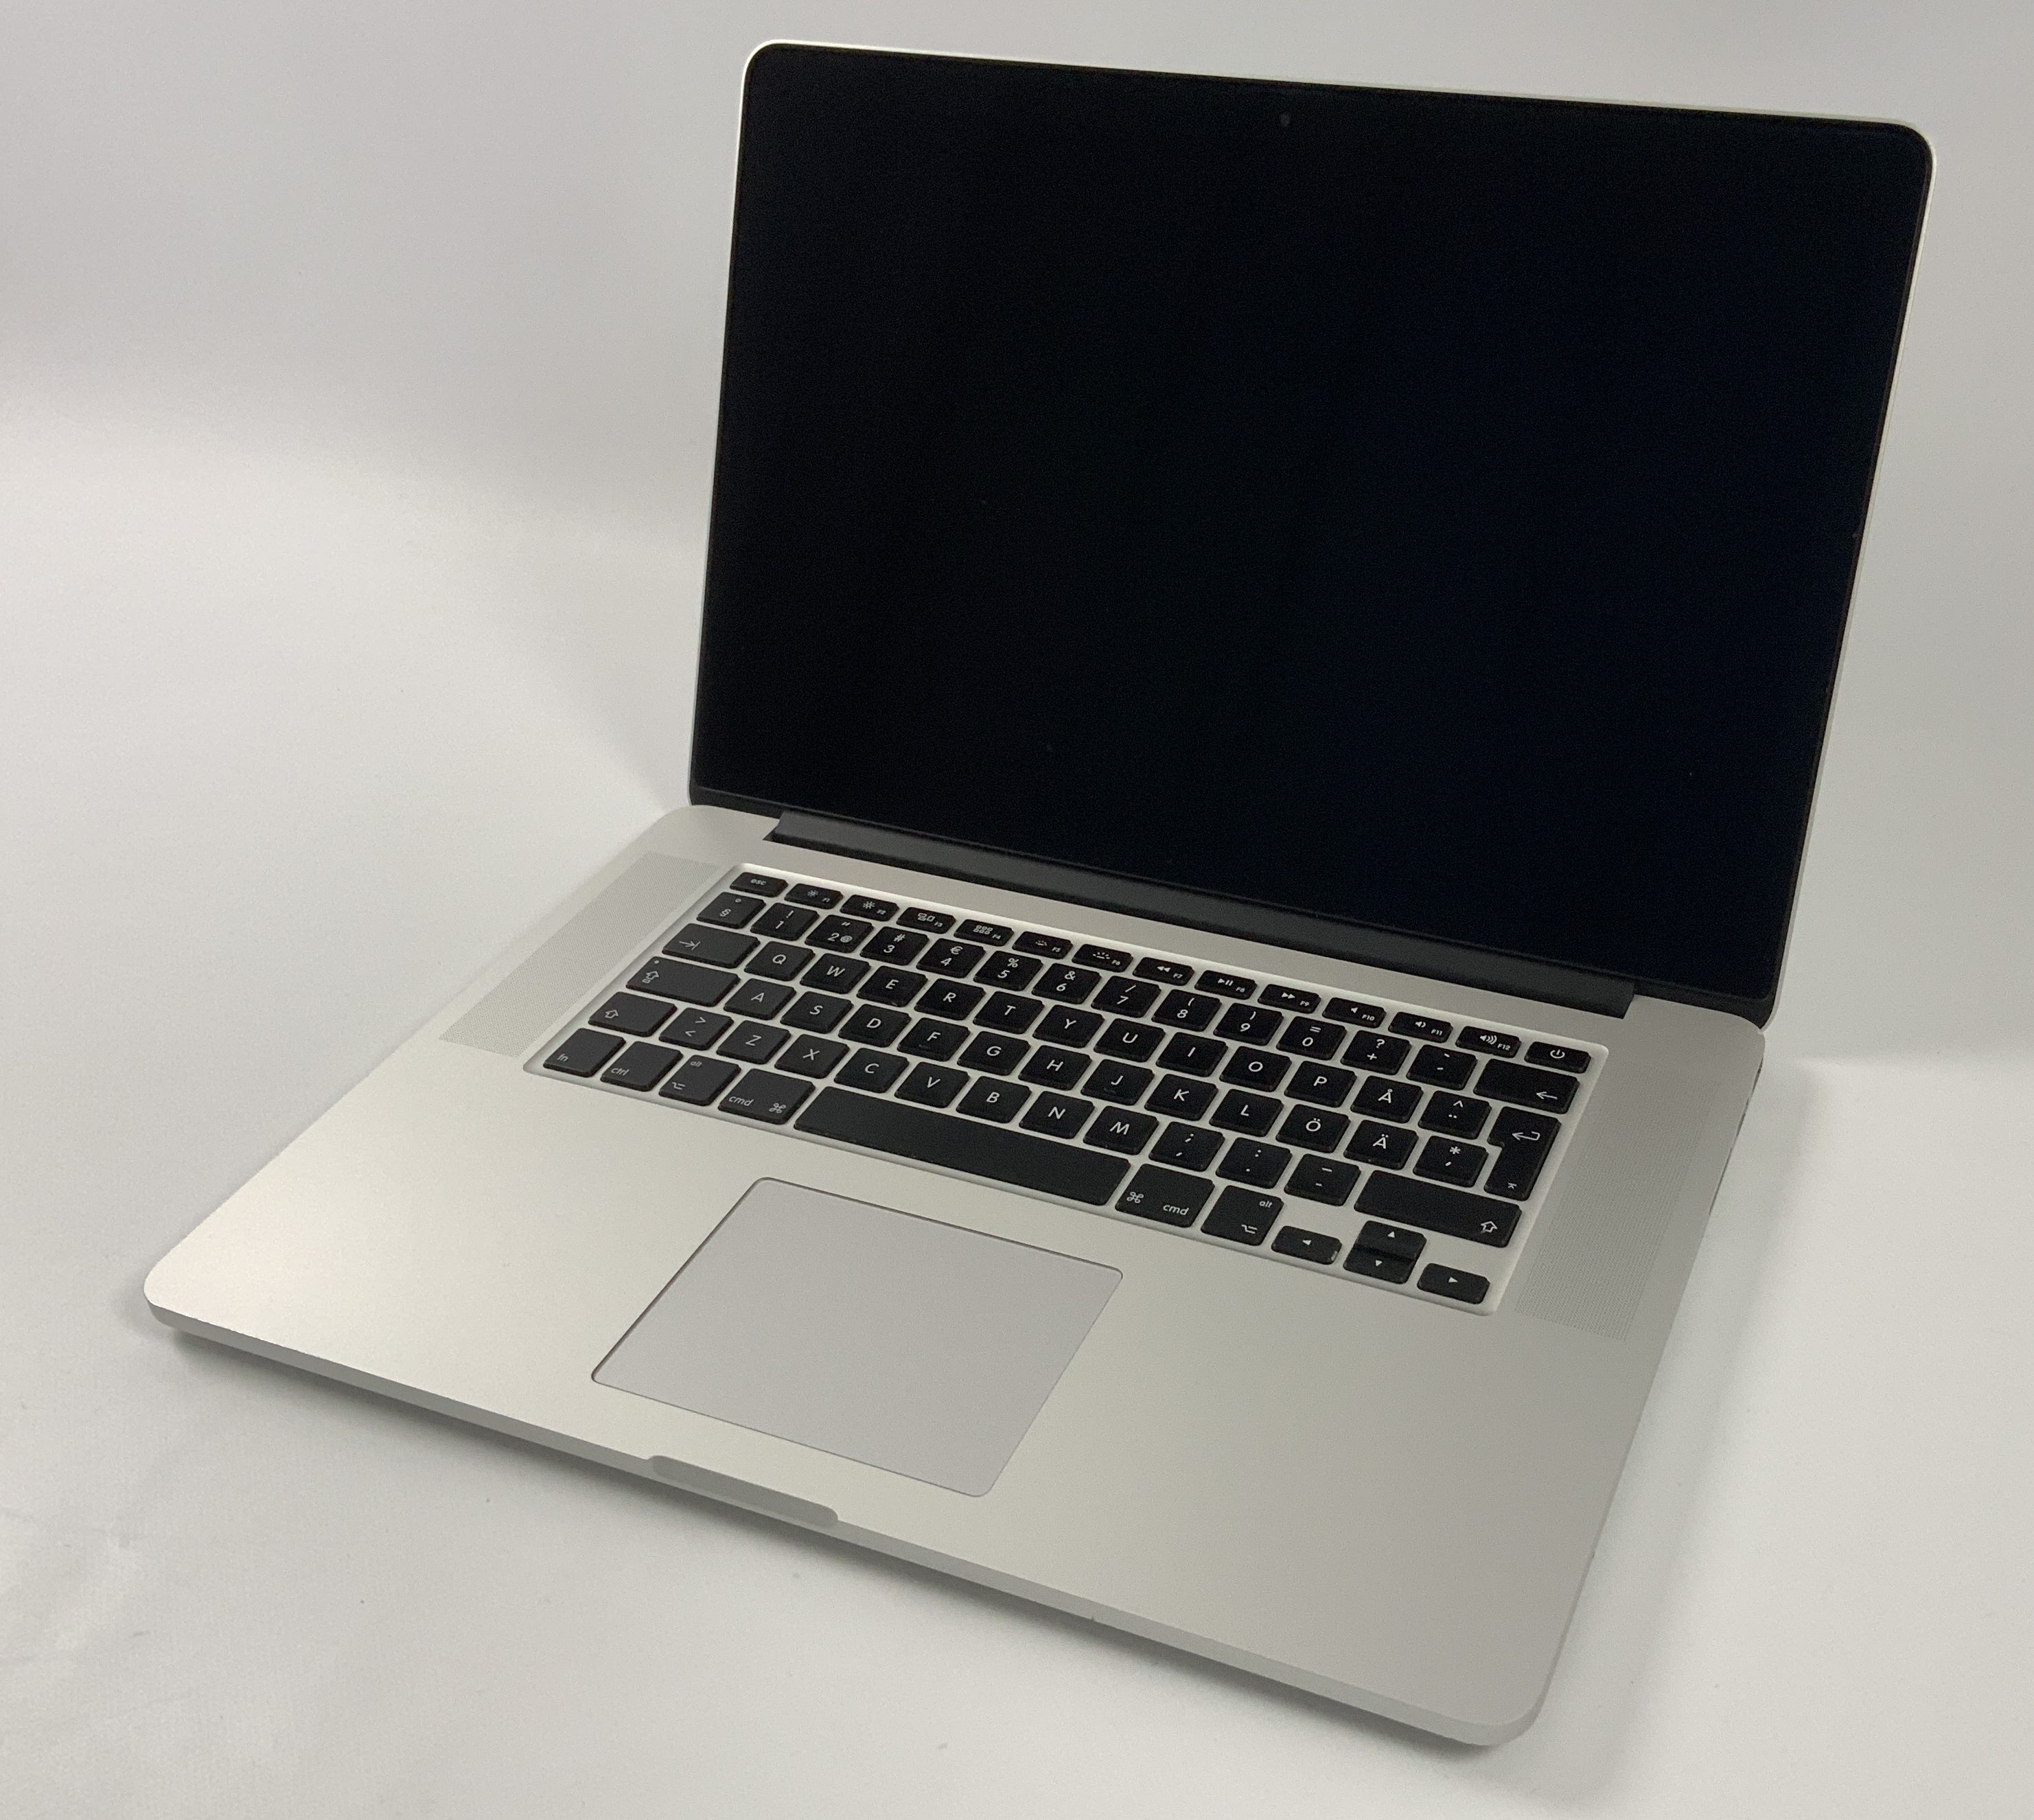 MacBook Pro Retina 15" Mid 2015 (Intel Quad-Core i7 2.5 GHz 16 GB RAM 512 GB SSD), Intel Quad-Core i7 2.5 GHz, 16 GB RAM, 512 GB SSD, imagen 1